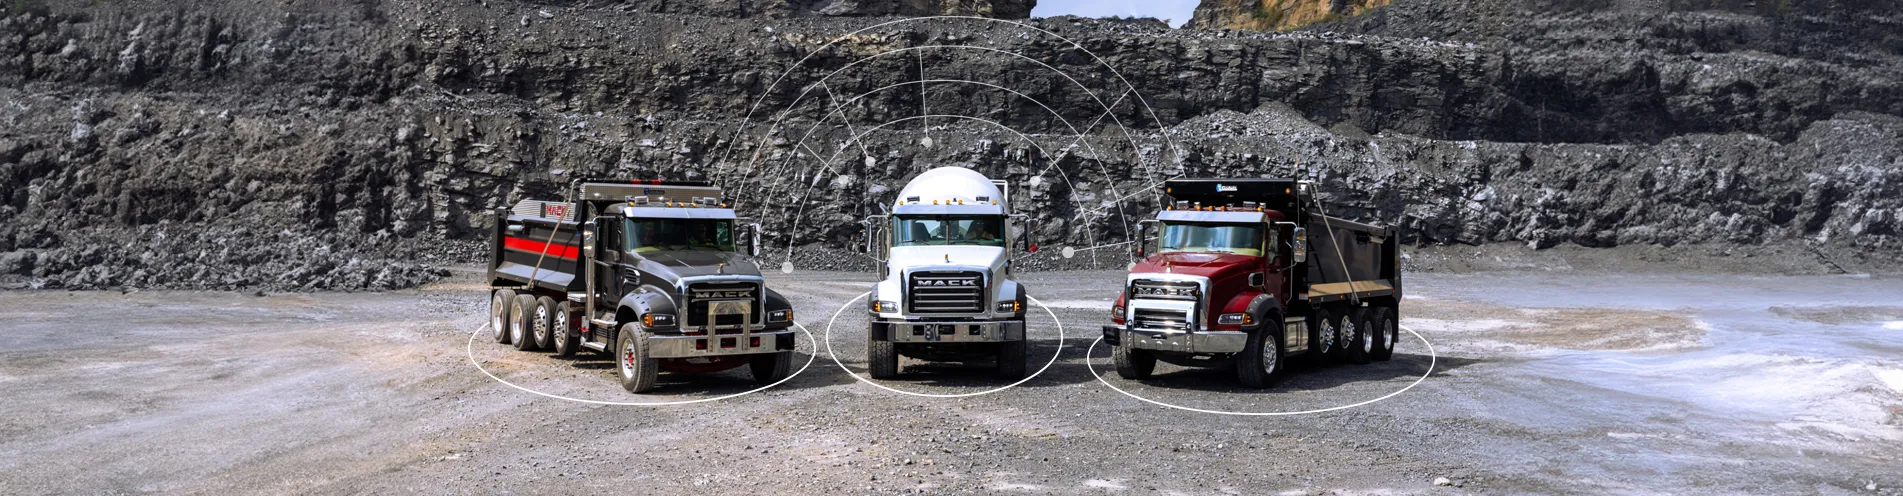 Camiones Mack Granite diseñados para construcción y minería.